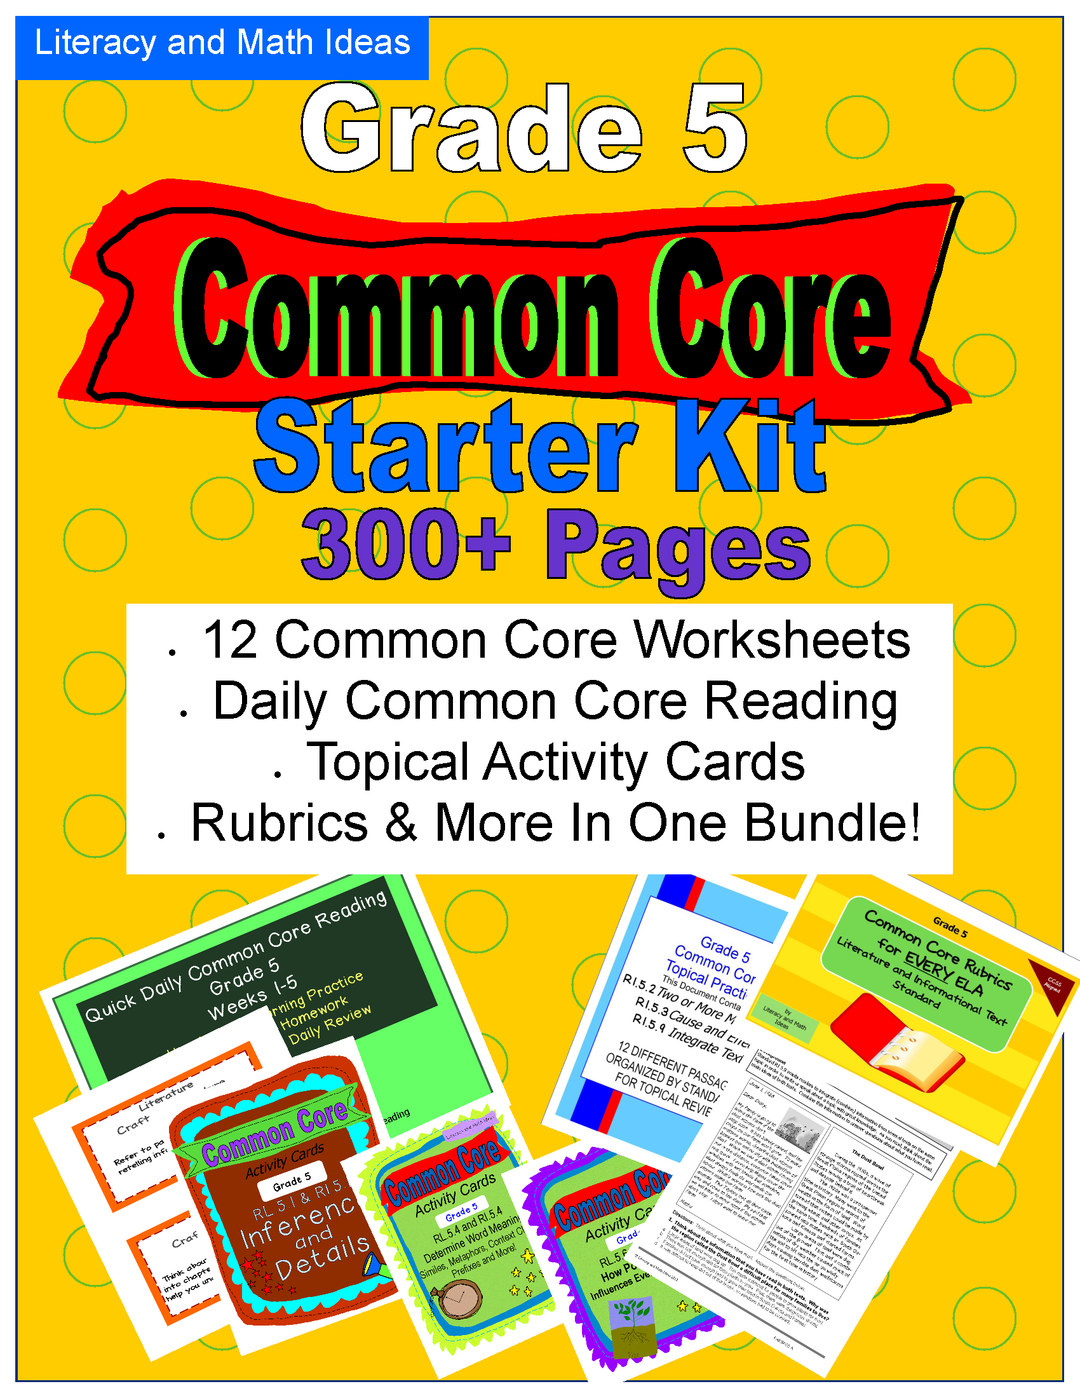 Common Core Grade 5 Starter Kit